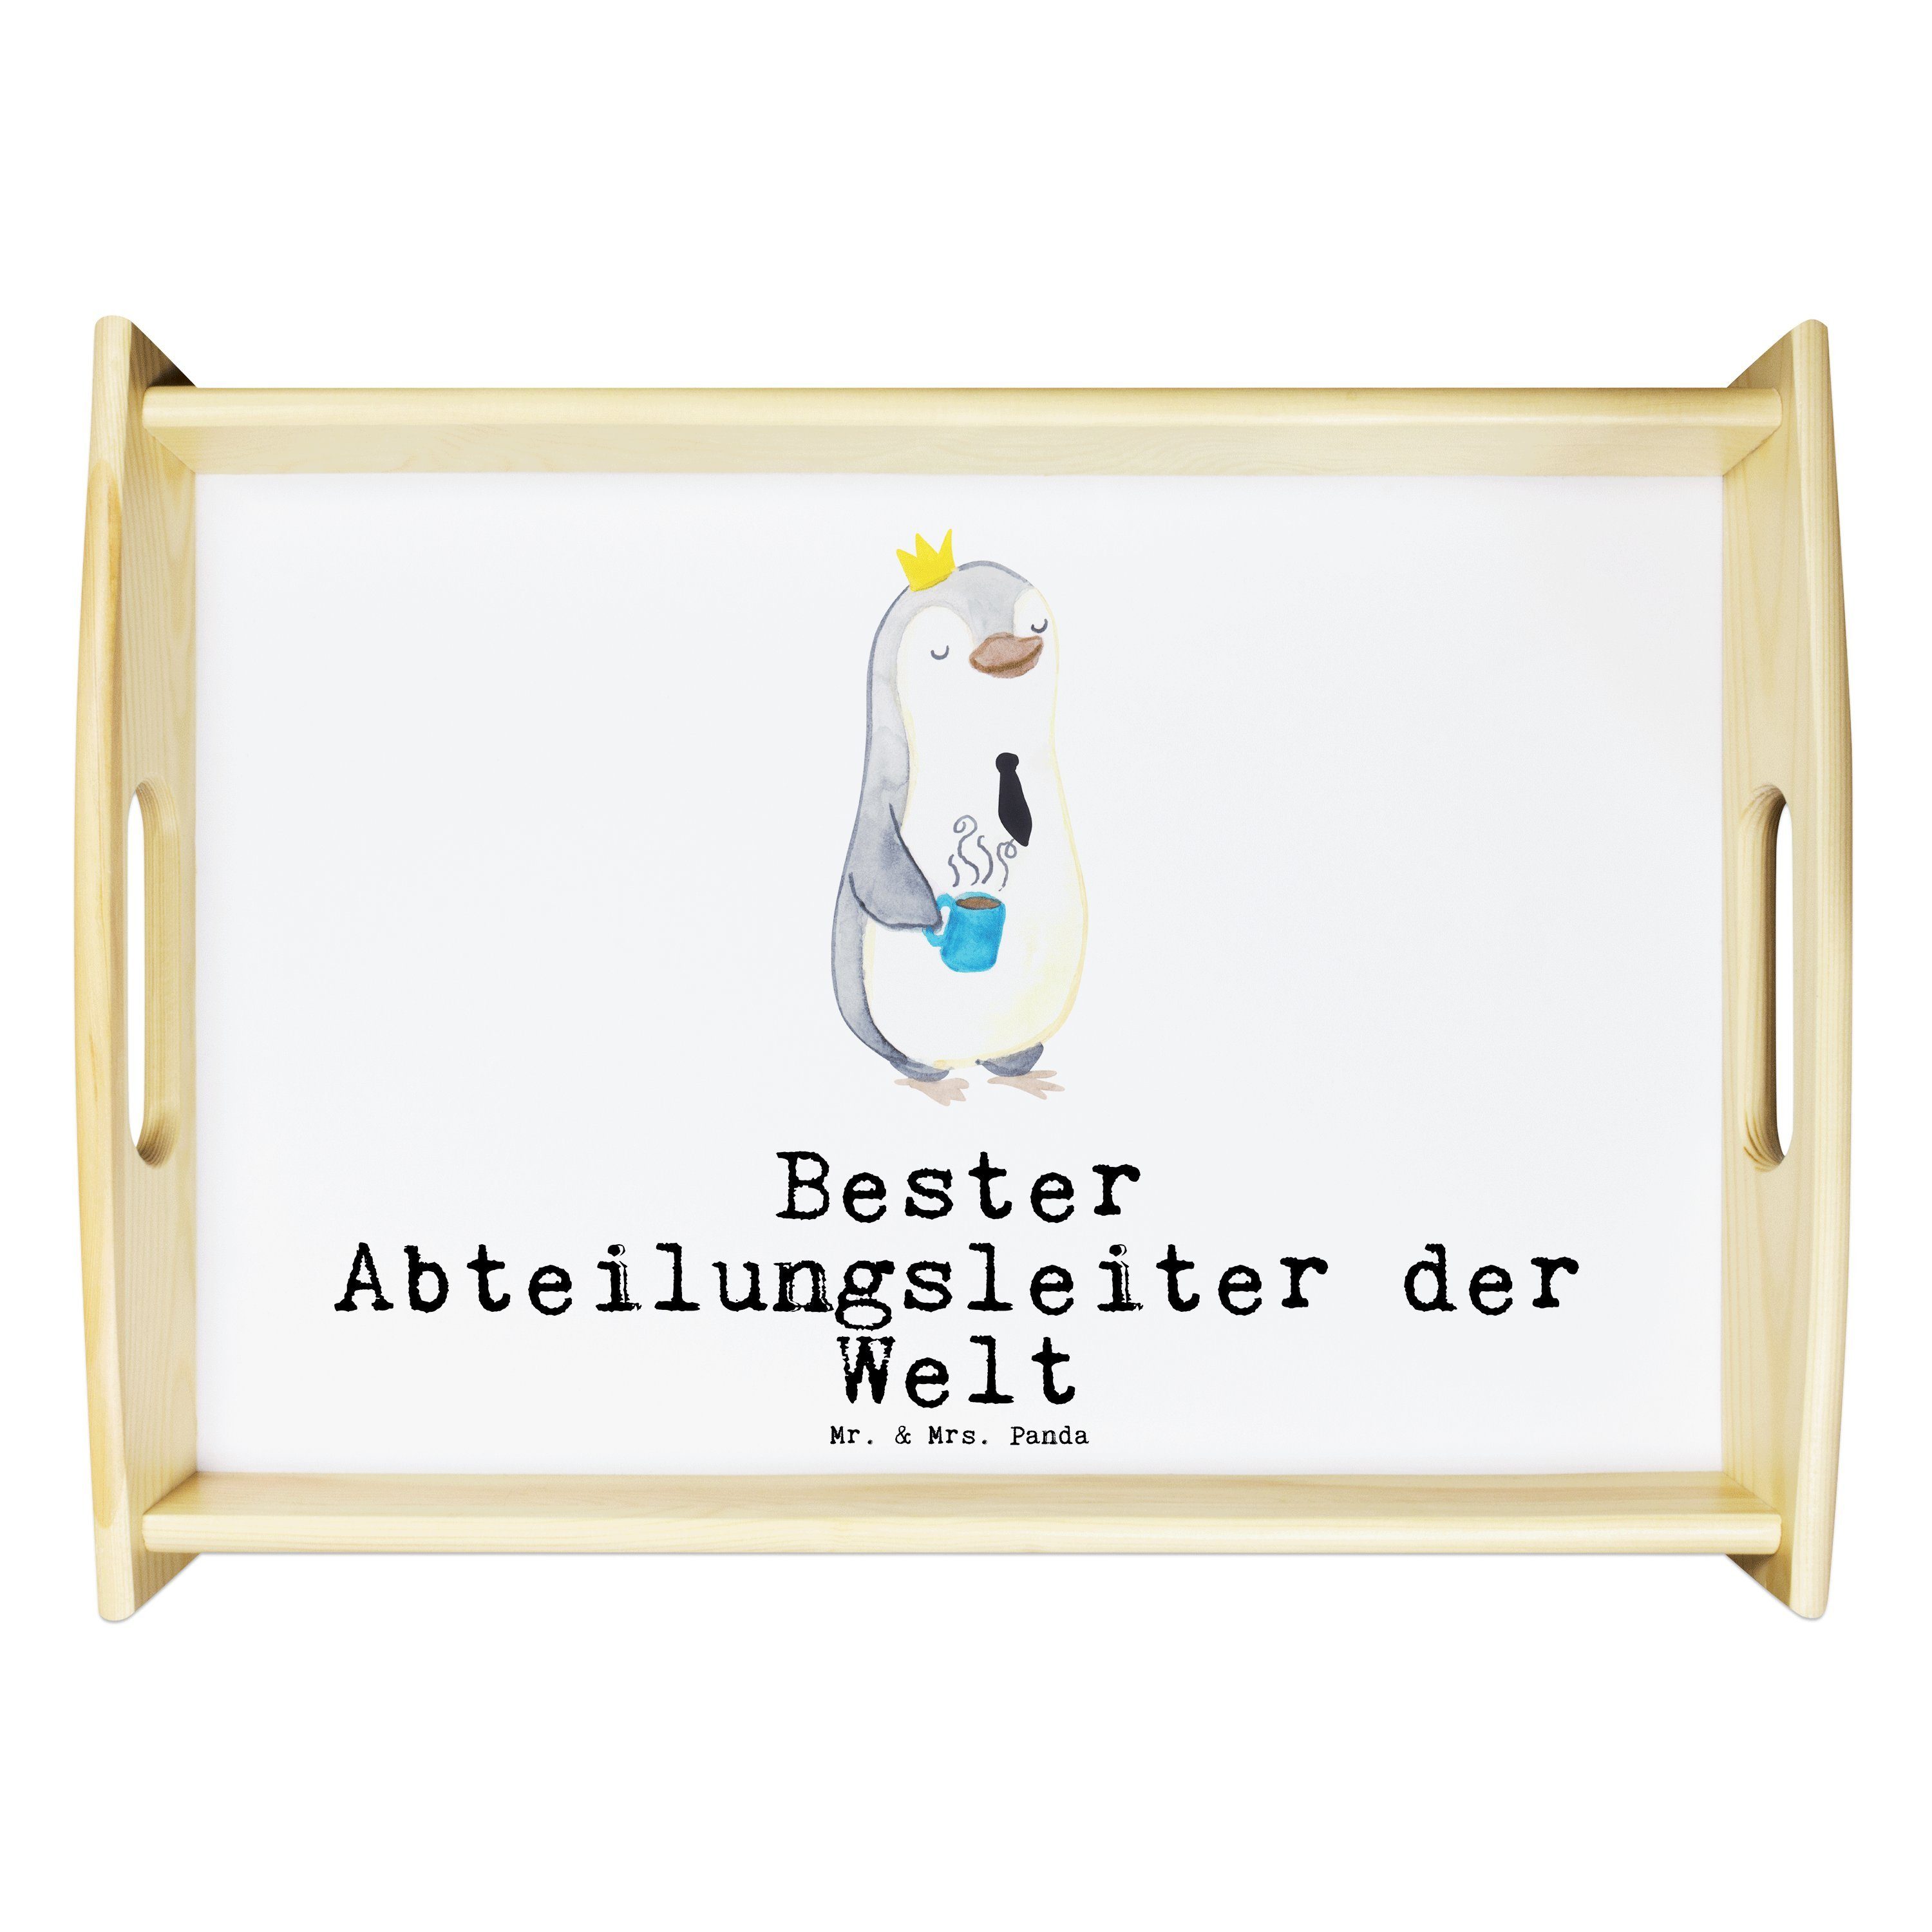 Weiß Panda Tablett Echtholz - - der Geburtsta, Mrs. Mr. & lasiert, Welt Bester Pinguin (1-tlg) Geschenk, Abteilungsleiter